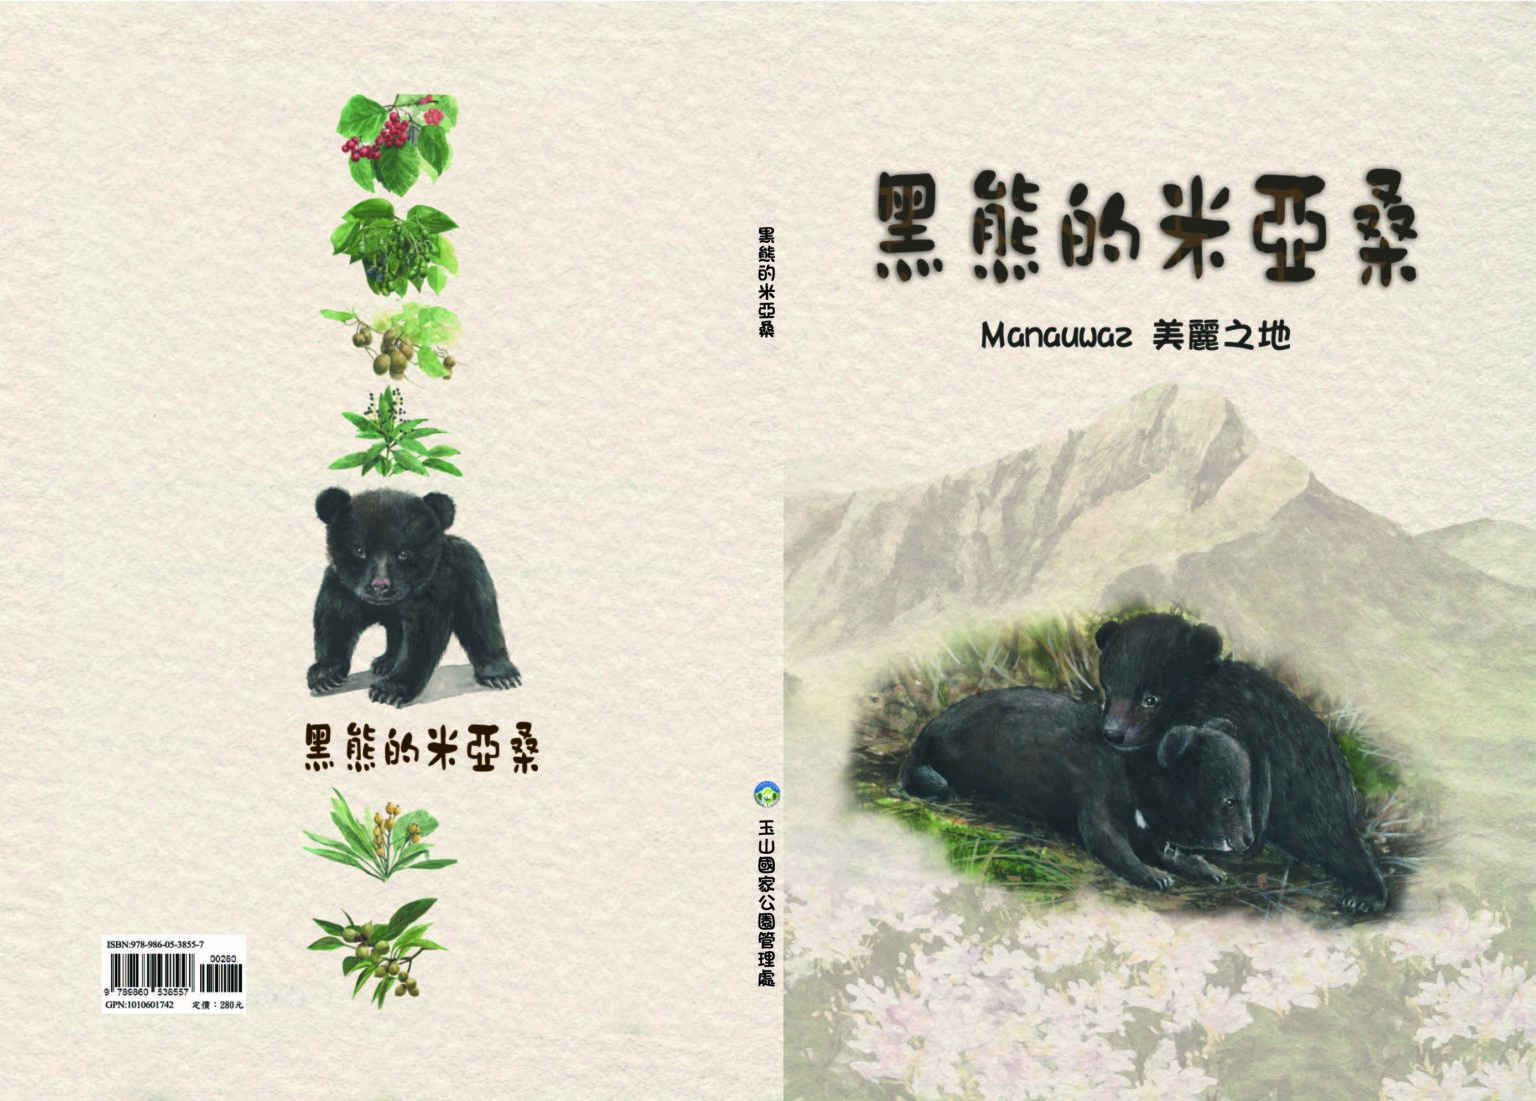 黑熊的米亞桑繪本封面 (玉山國家公園管理處提供)